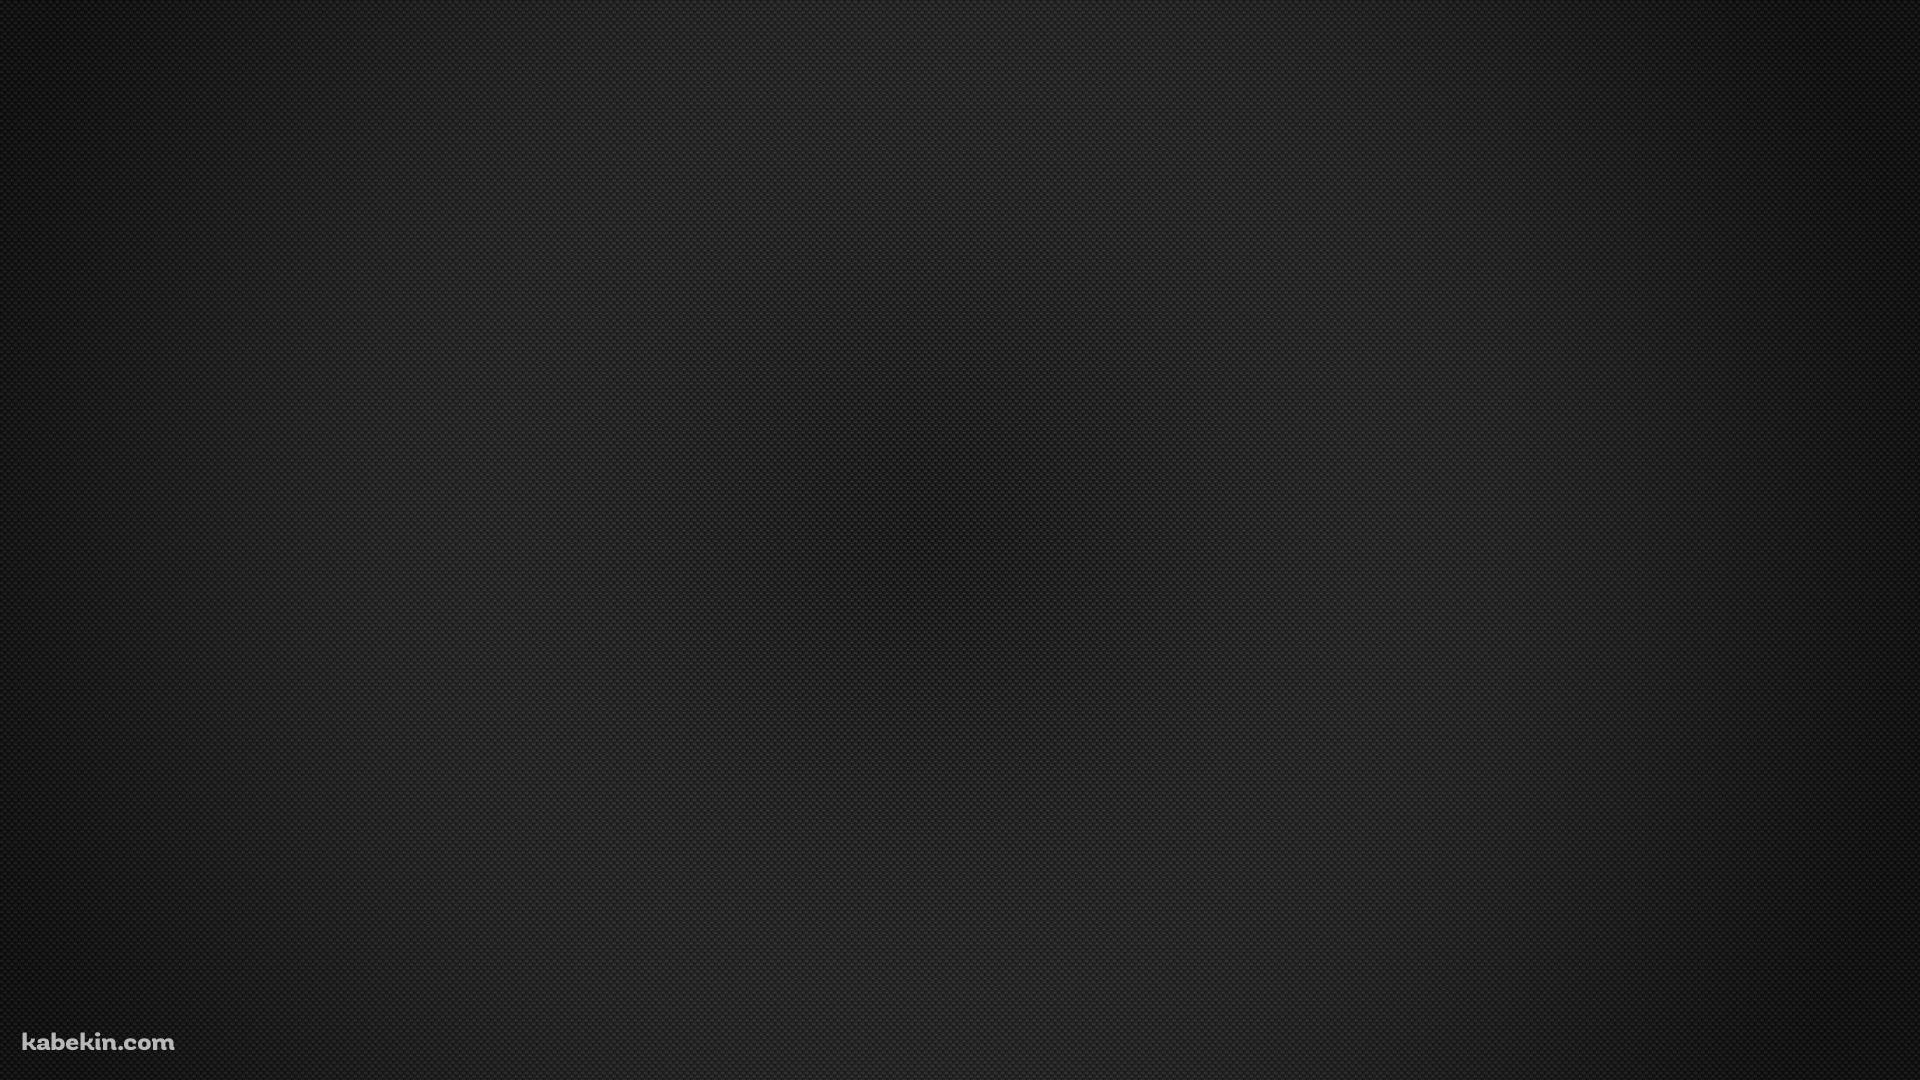 シンプルな黒のドットの集合体の壁紙(1920px x 1080px) 高画質 PC・デスクトップ用